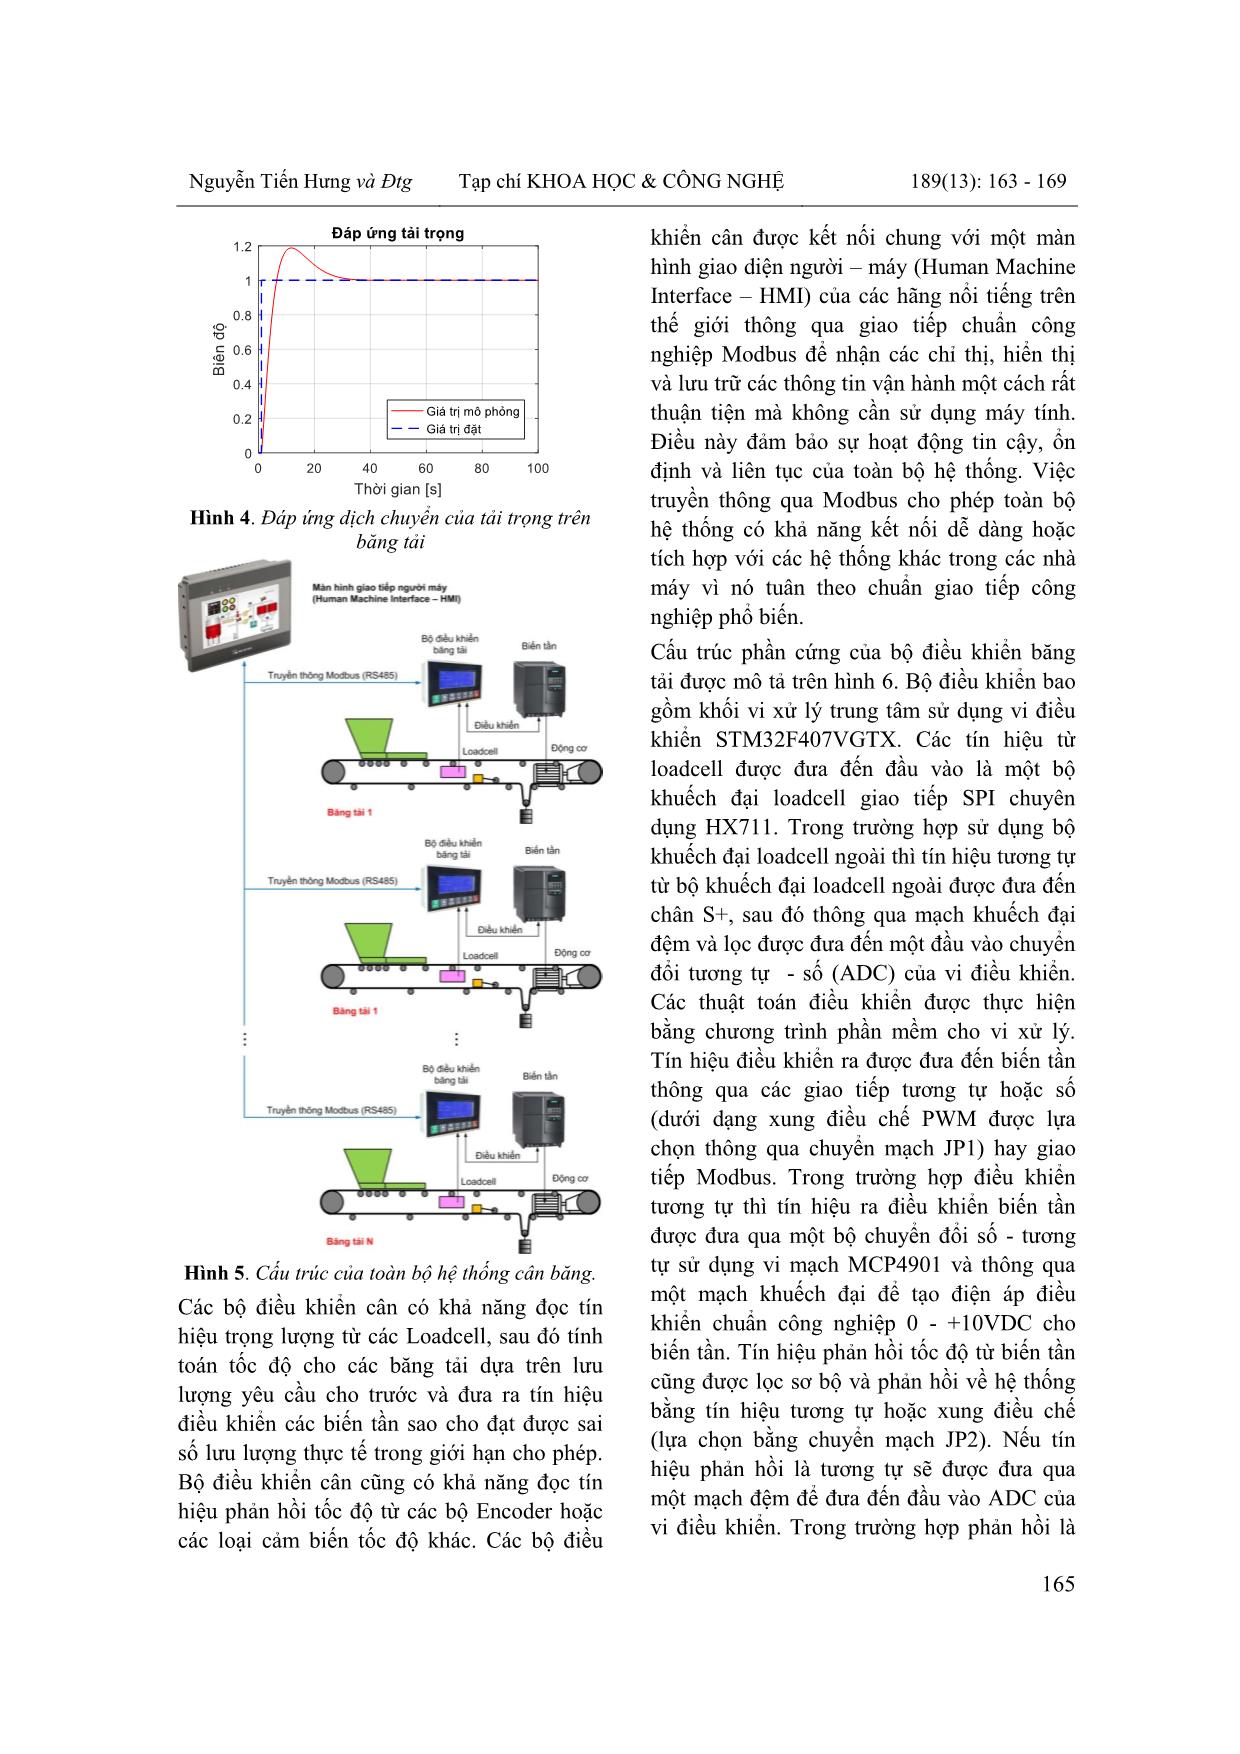 Thiết kế và chế tạo hệ thống cân băng định lượng điều khiển độc lập từng thành phần và giao tiếp Modbus trang 3